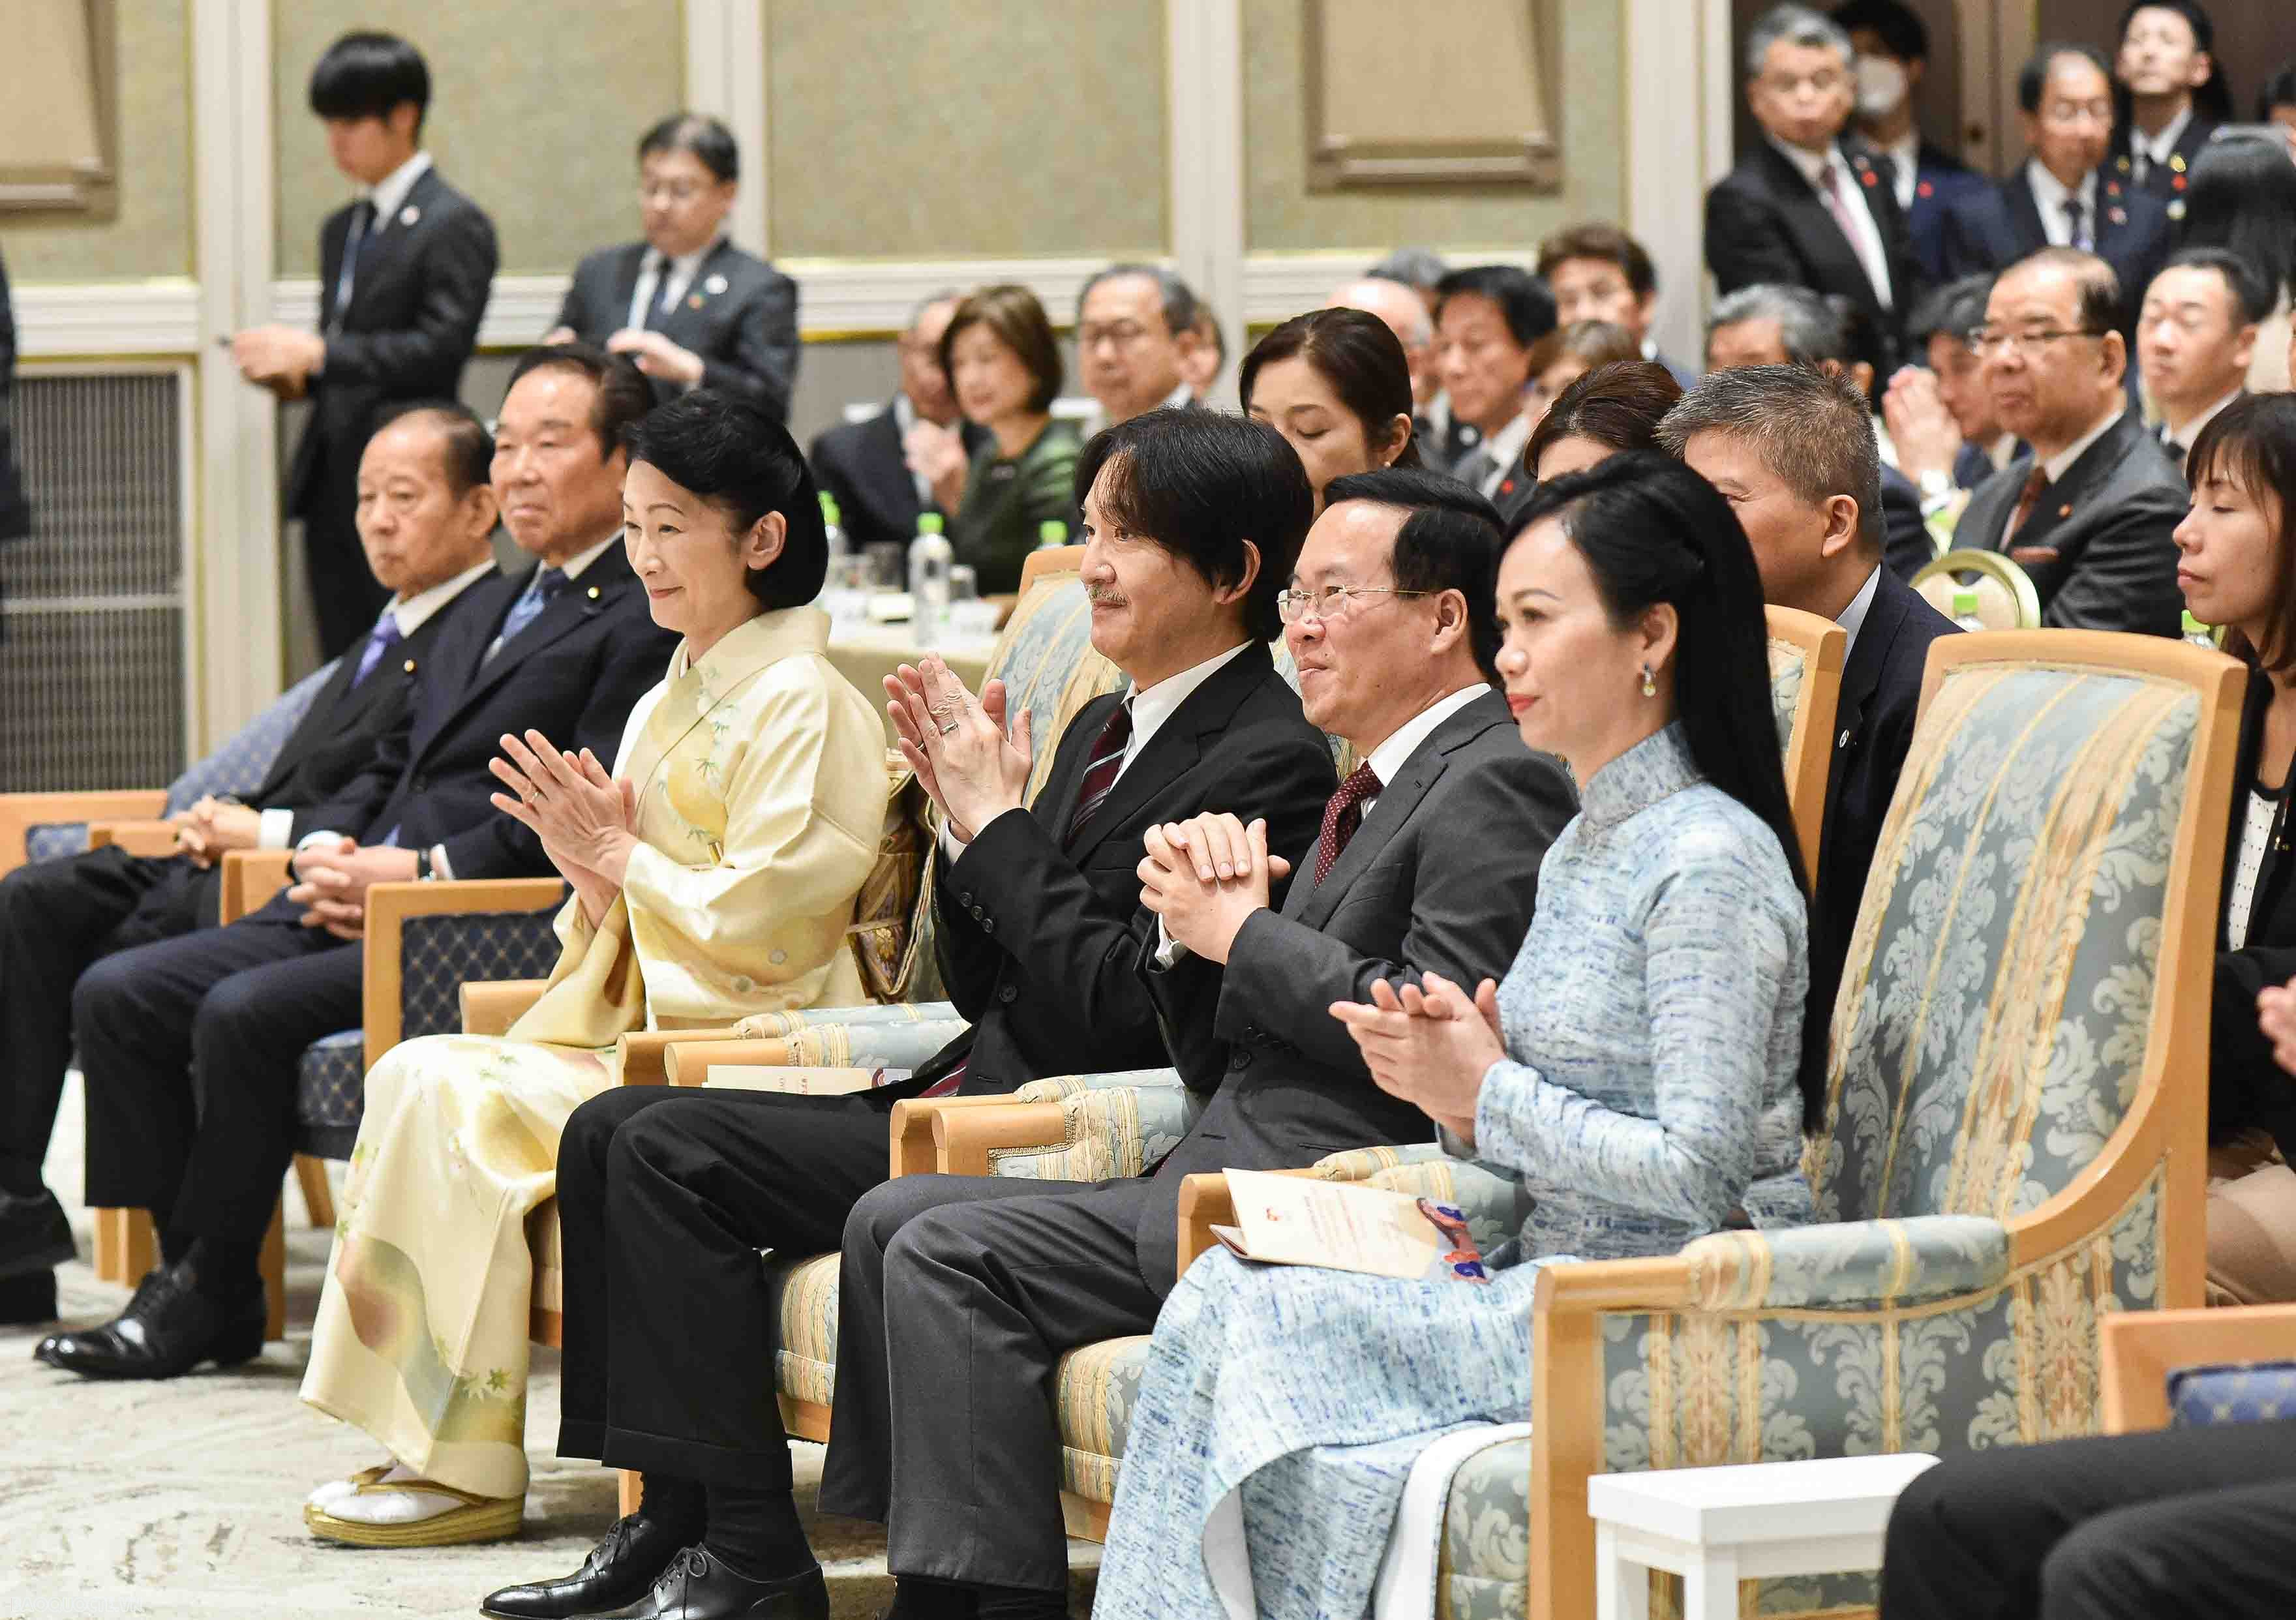 4 dấu ấn quan trọng trong chuyến thăm chính thức Nhật Bản của Chủ tịch nước và Phu nhân